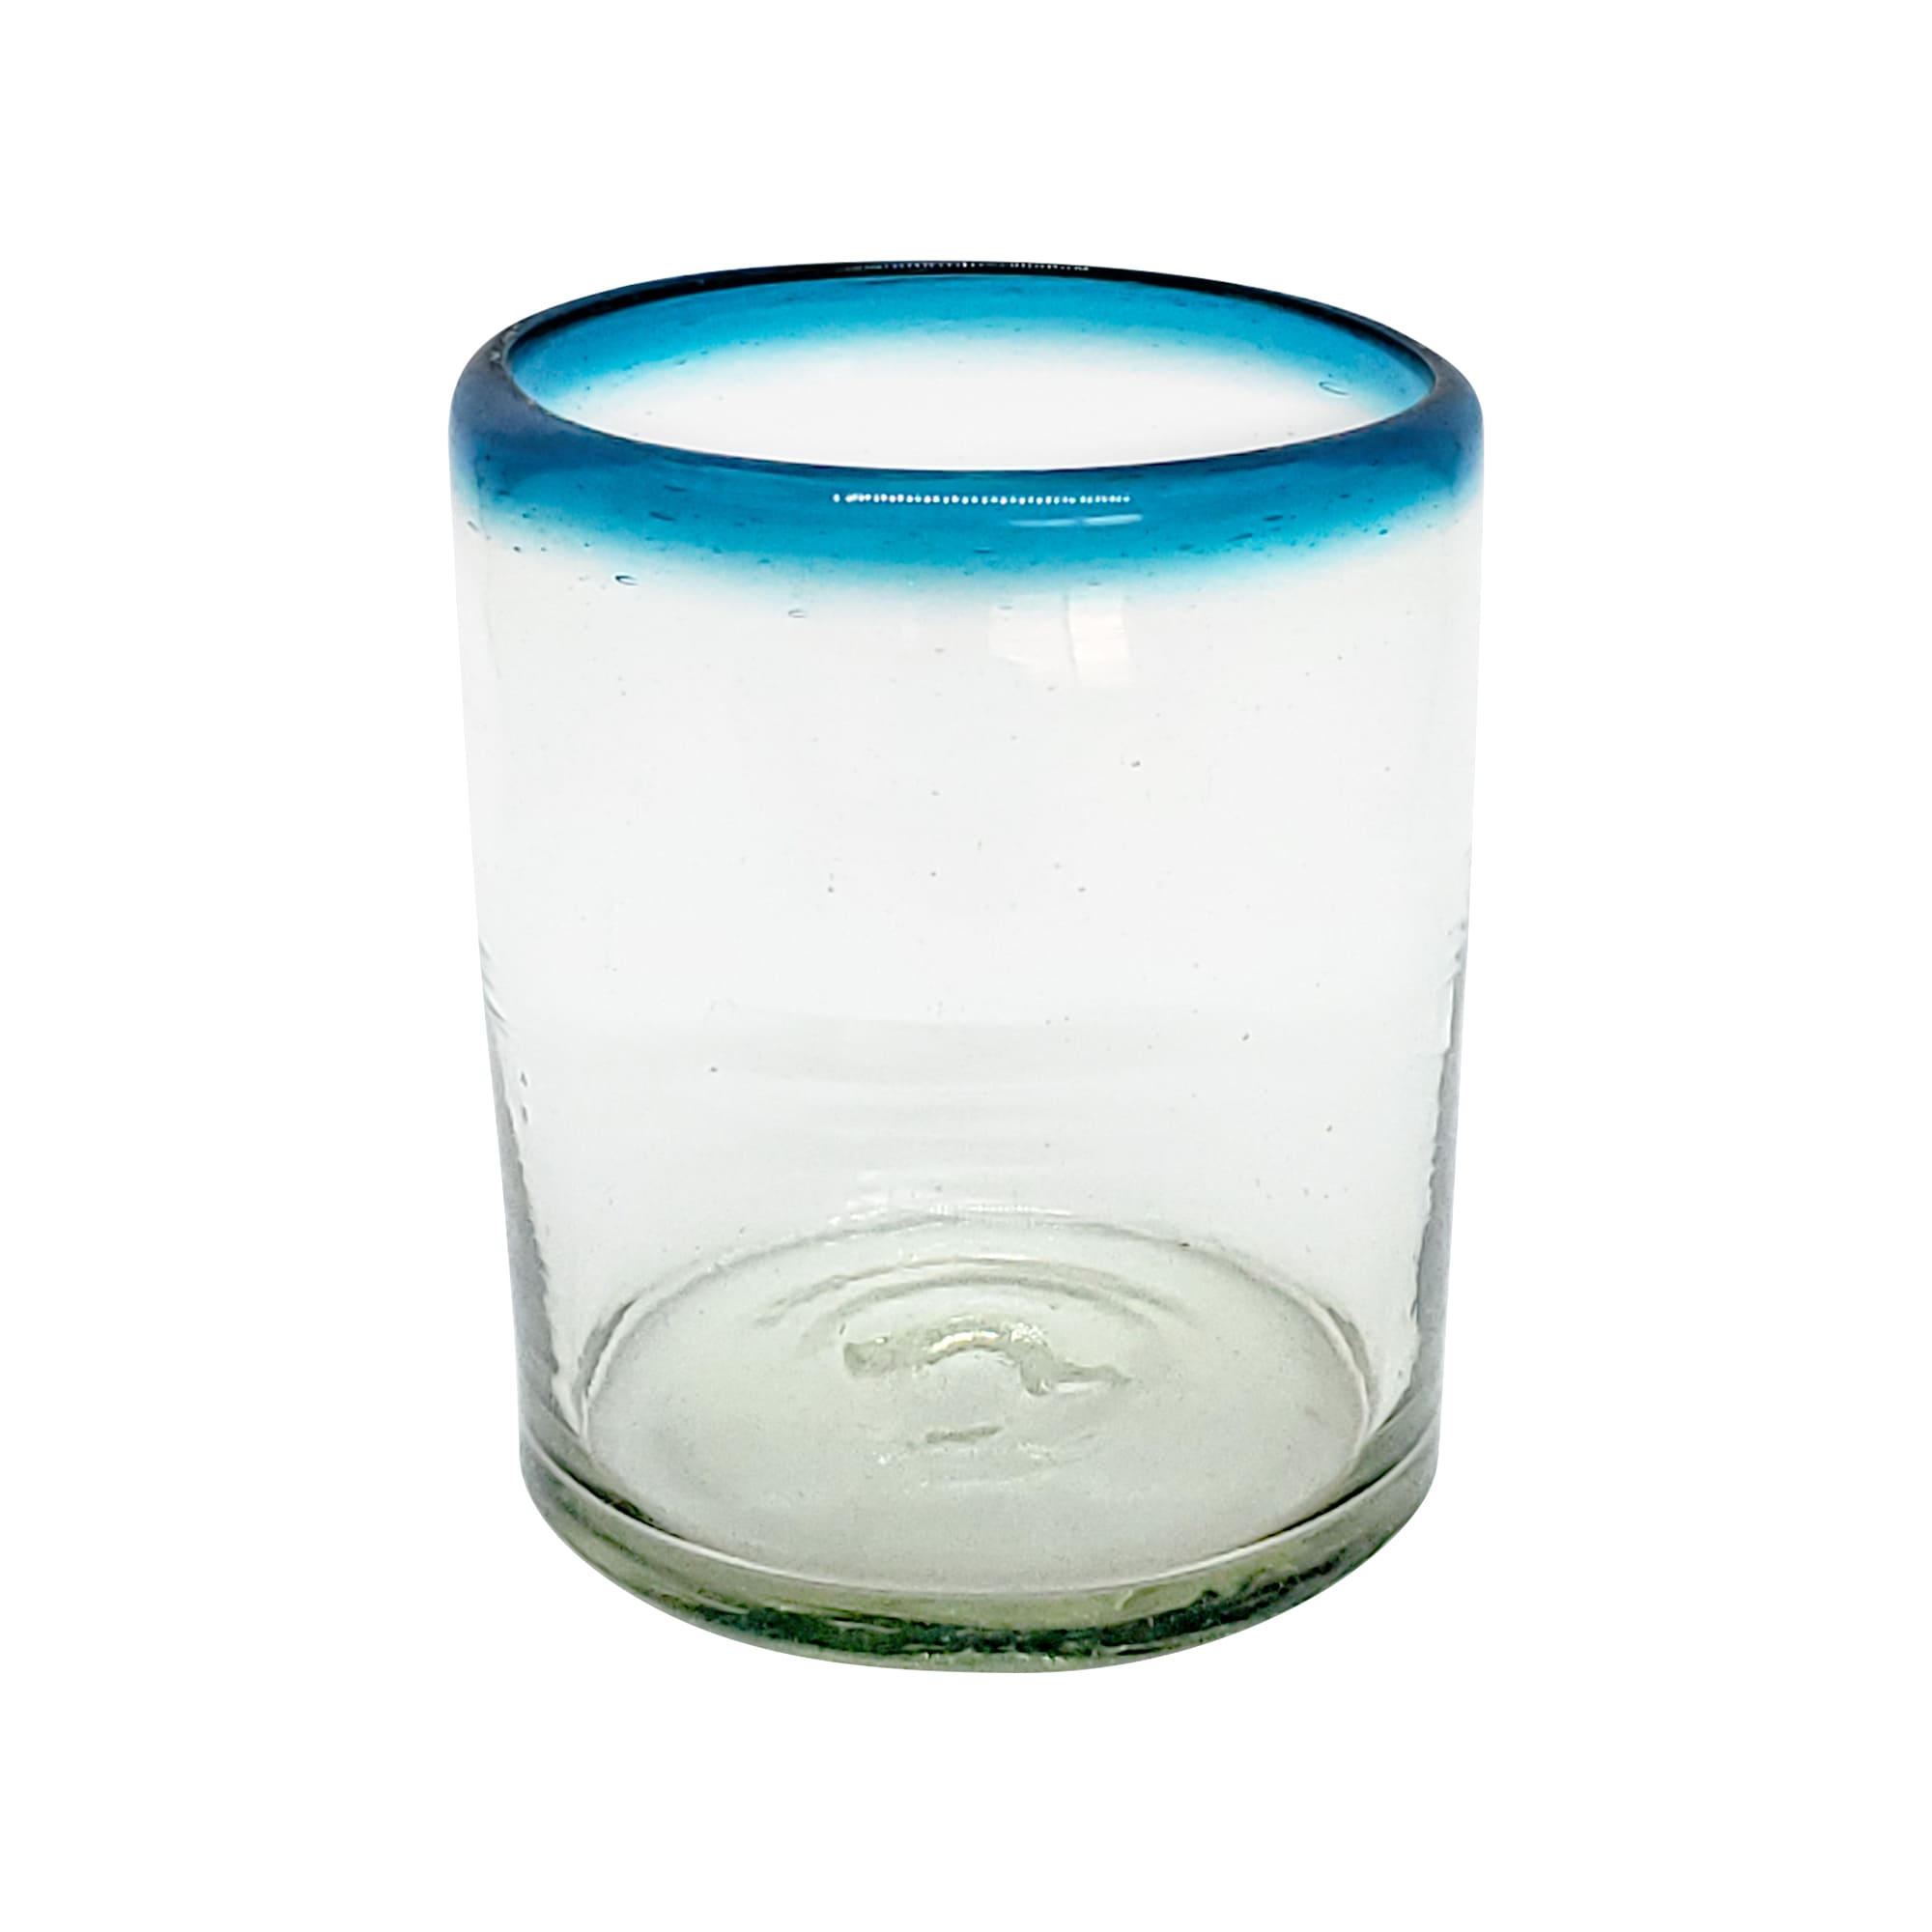 Vasos de Vidrio Soplado / Juego de 6 vasos chicos con borde azul aqua / Éstos vasos chicos son un gran complemento para su juego de jarra y vasos grandes.